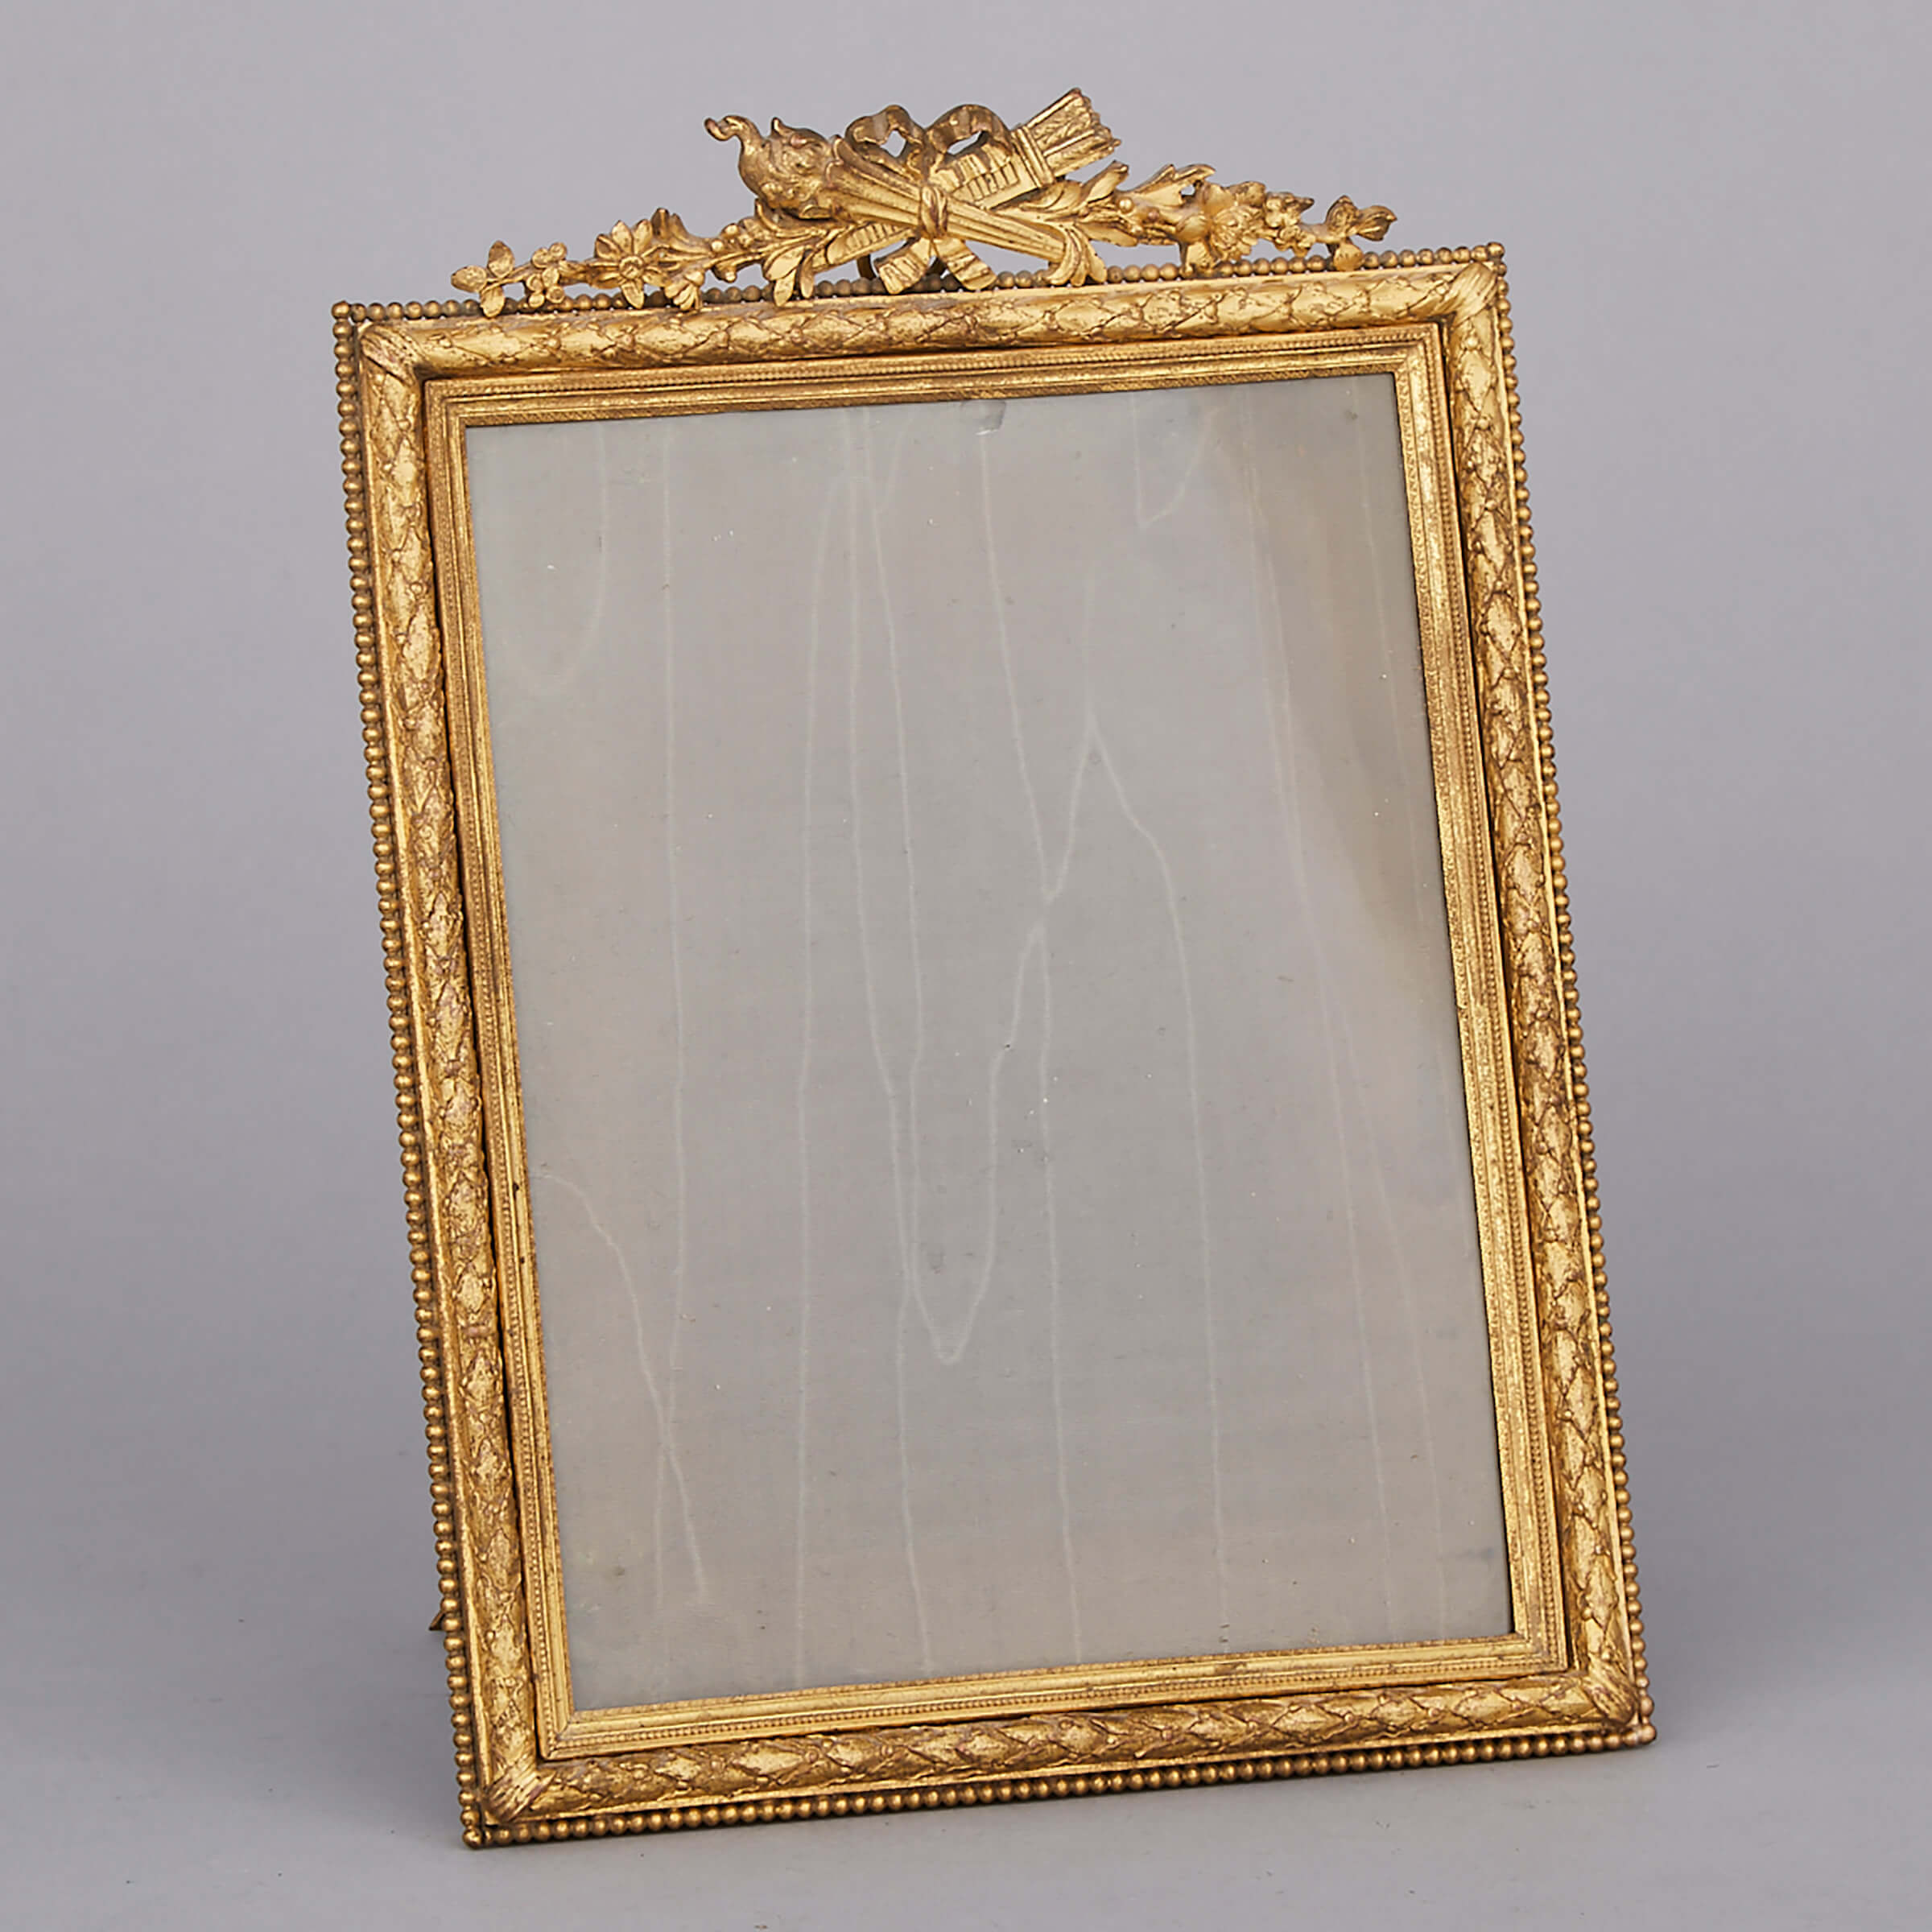 Napoleon III Louis XVI Style Ormolu Easel Frame, 19th century